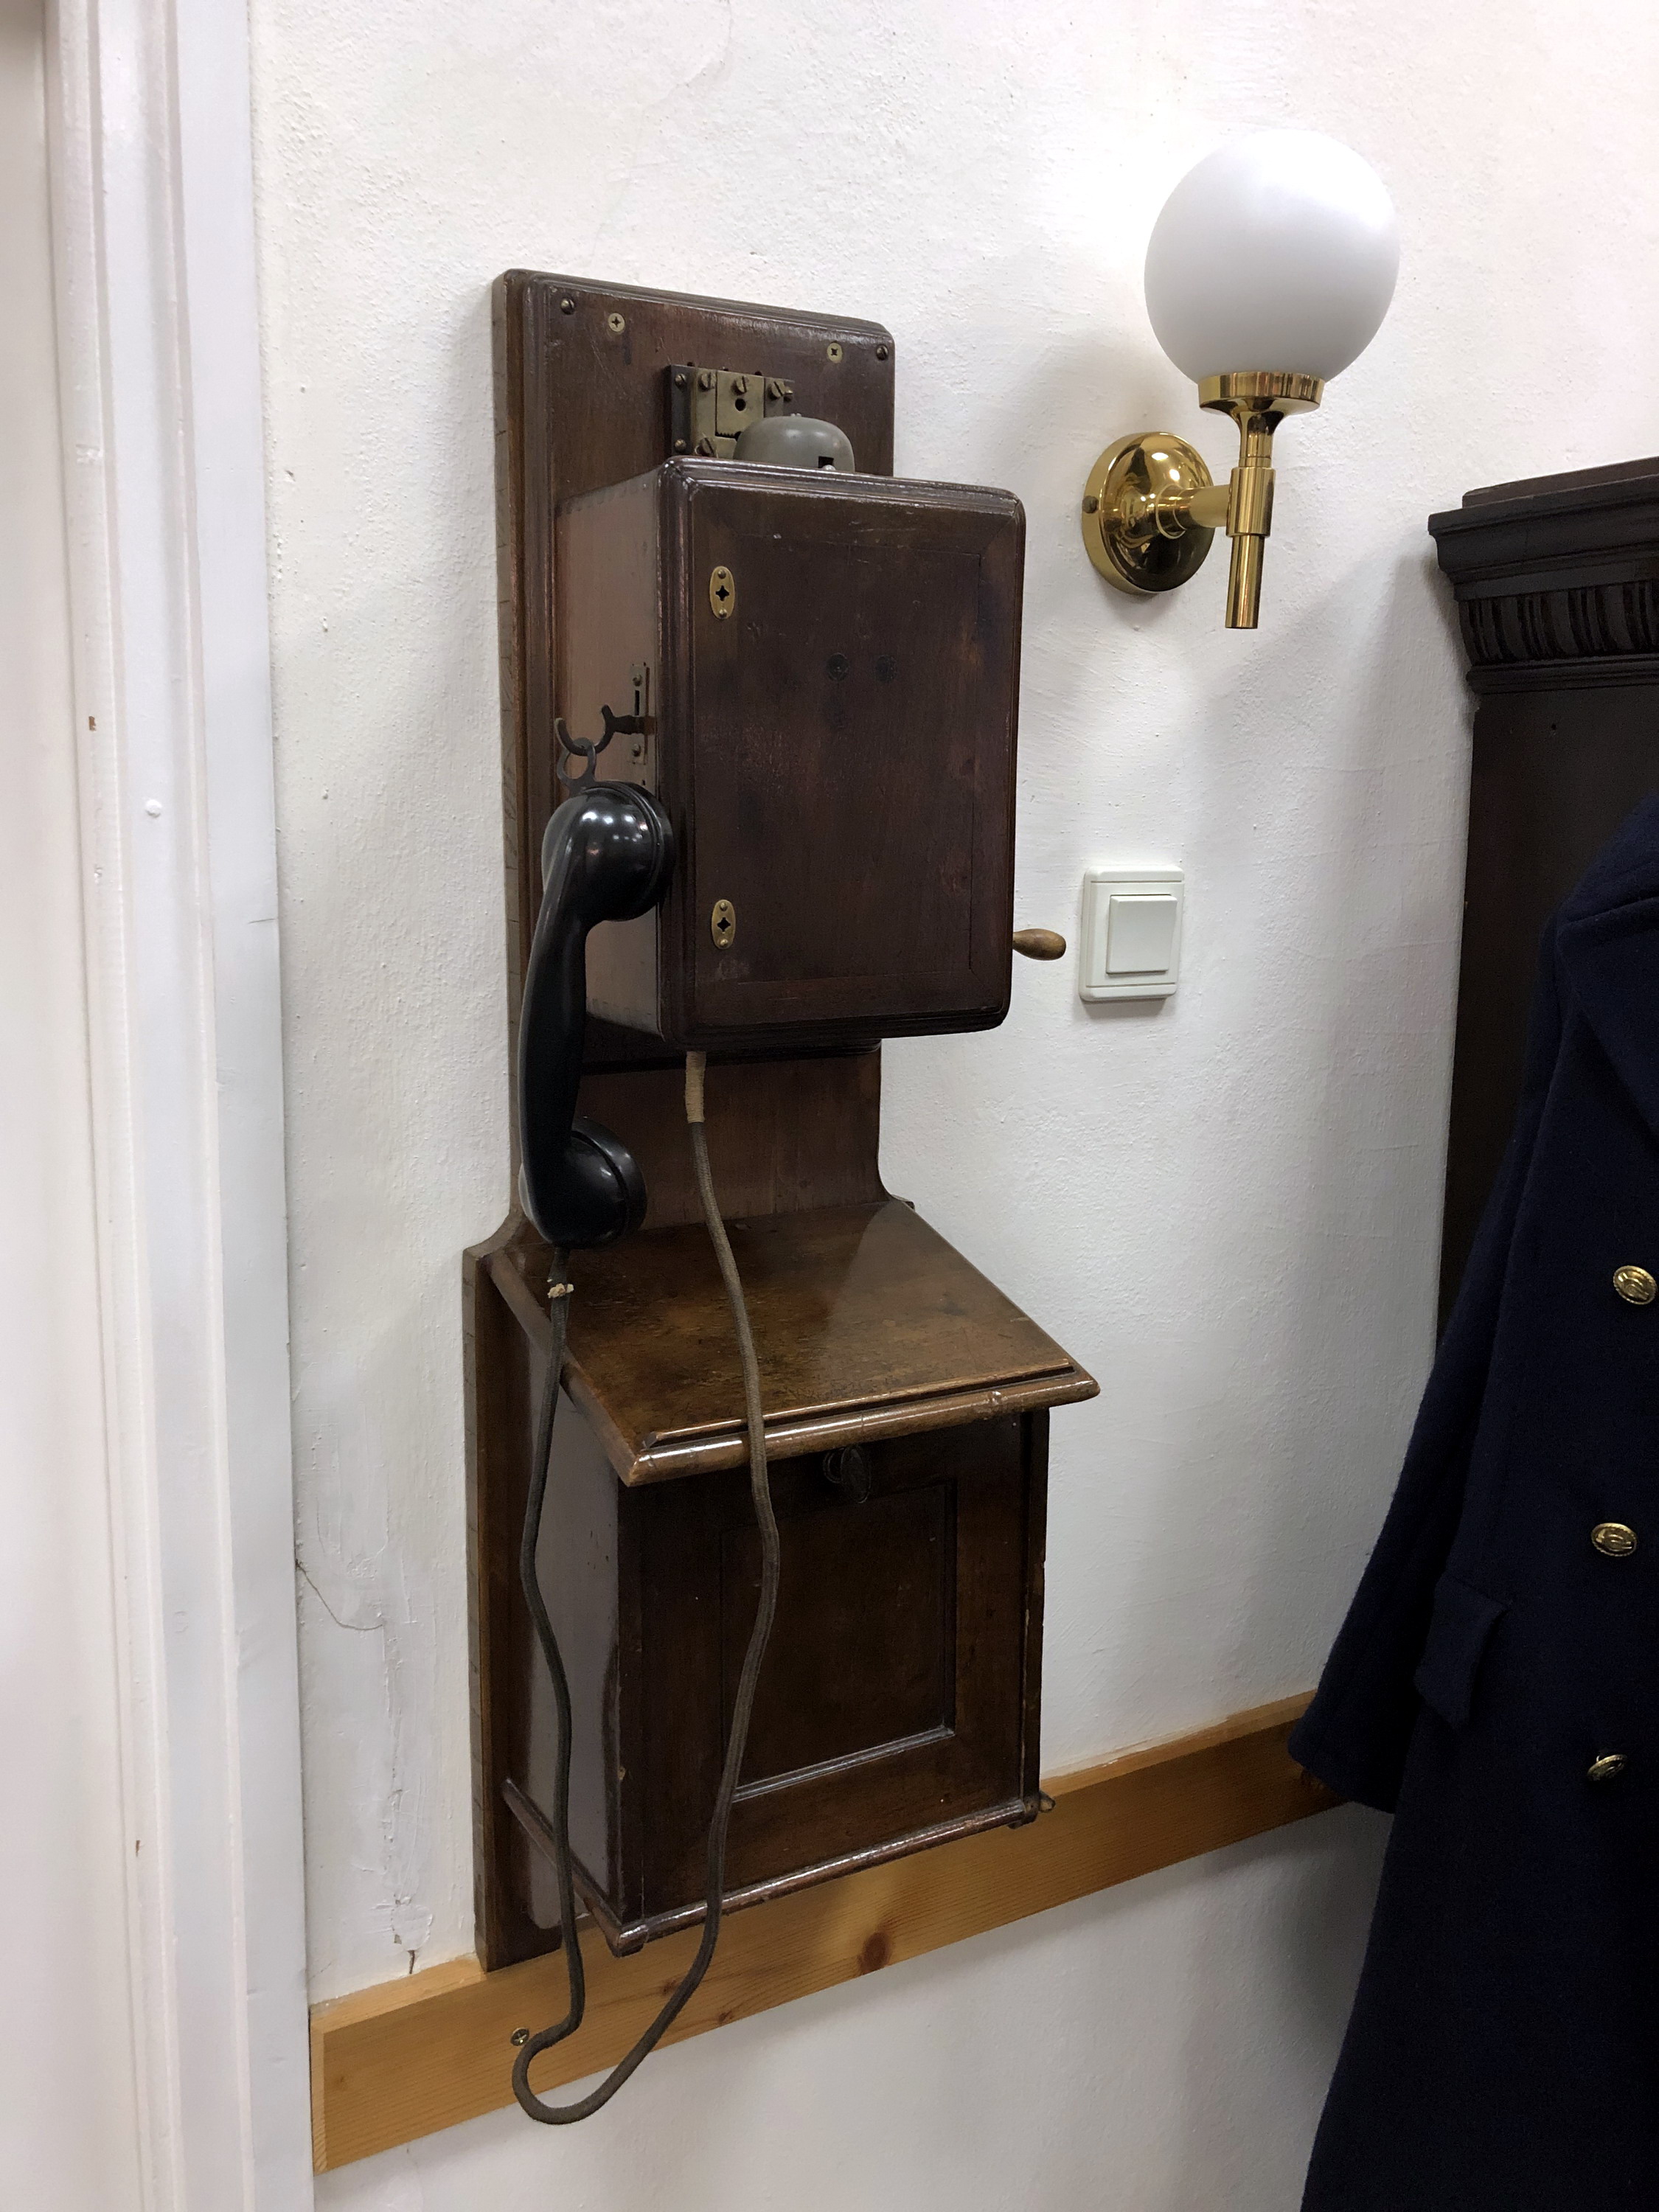 Átalakított M.Á.V.-szabványú faházas LB telefon ‘kurtított‘ telephátdeszkával. A kanállhallgató helyére CB.35-ös bakelit kézibeszélő került, a Berliner mikrofon szárát rögzítő hüvelyek helyét ledugózták. A csengőharangok helyére egy telefonközpontos csengőt szereltek be.